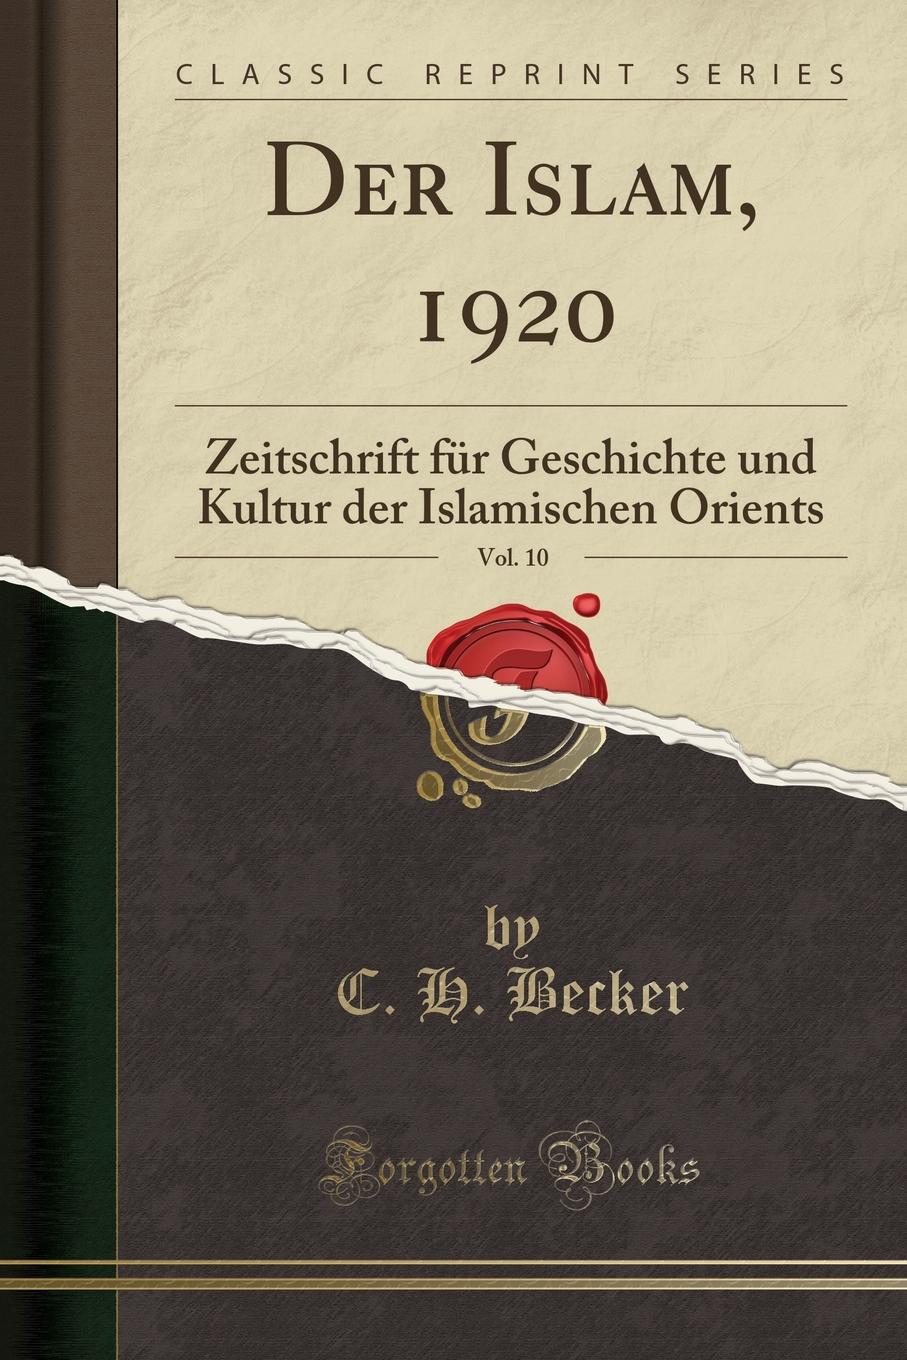 Der Islam, 1920, Vol. 10. Zeitschrift fur Geschichte und Kultur der Islamischen Orients (Classic Reprint)